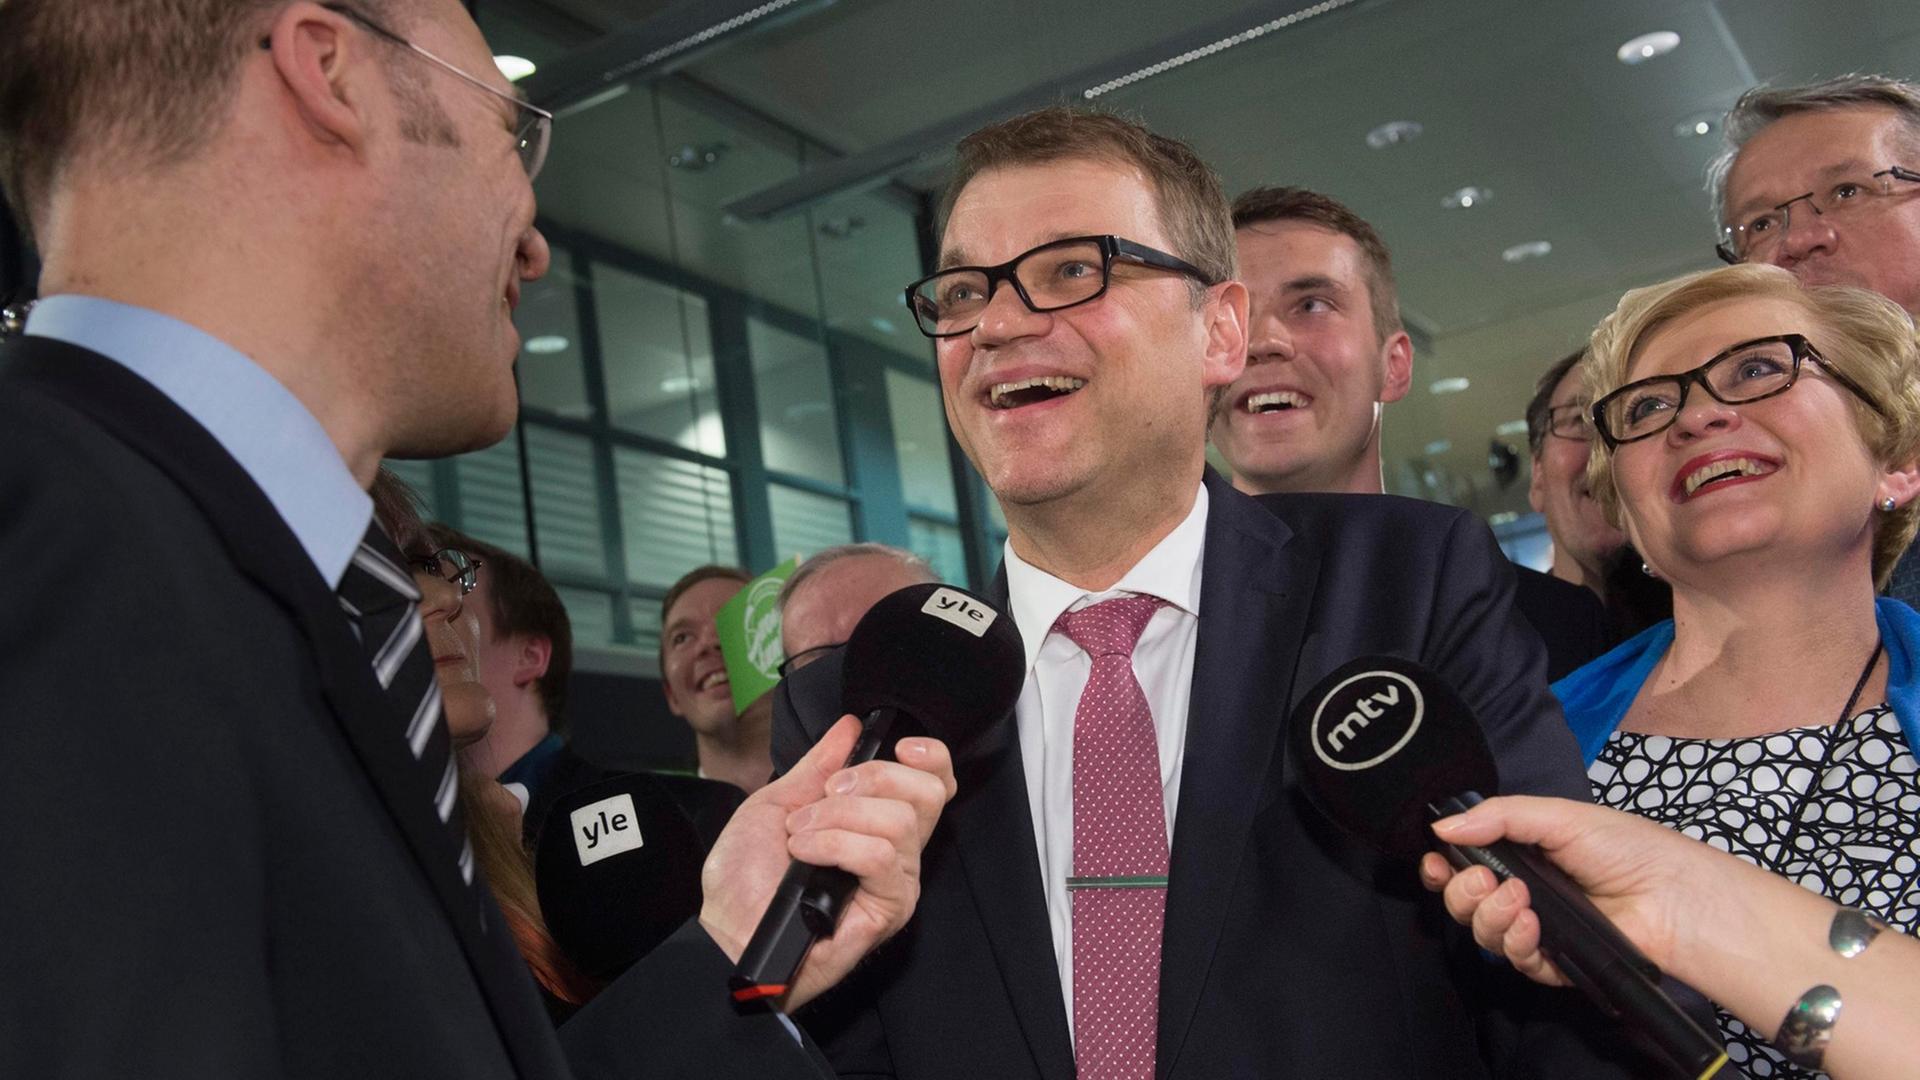 Sieger bei der Parlamentswahl in Finnland: Juha Sipilä, Chef der Zentrumspartei, am Wahlabend